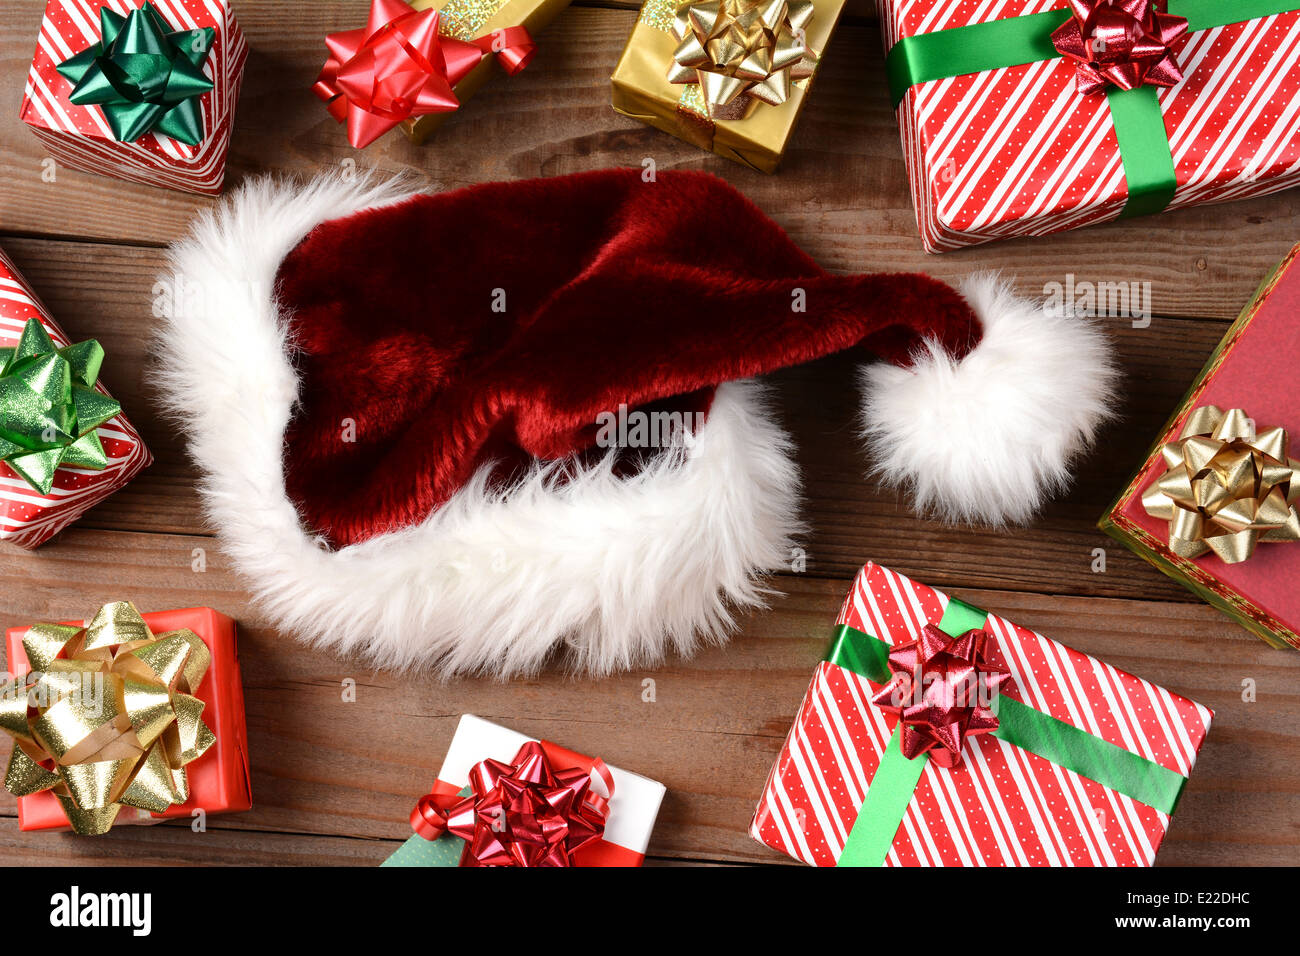 Vue de dessus d'un chapeau de Père Noël entouré par des cadeaux de Noël sur un plancher en bois rustique. Format horizontal en remplissant le cadre. Banque D'Images